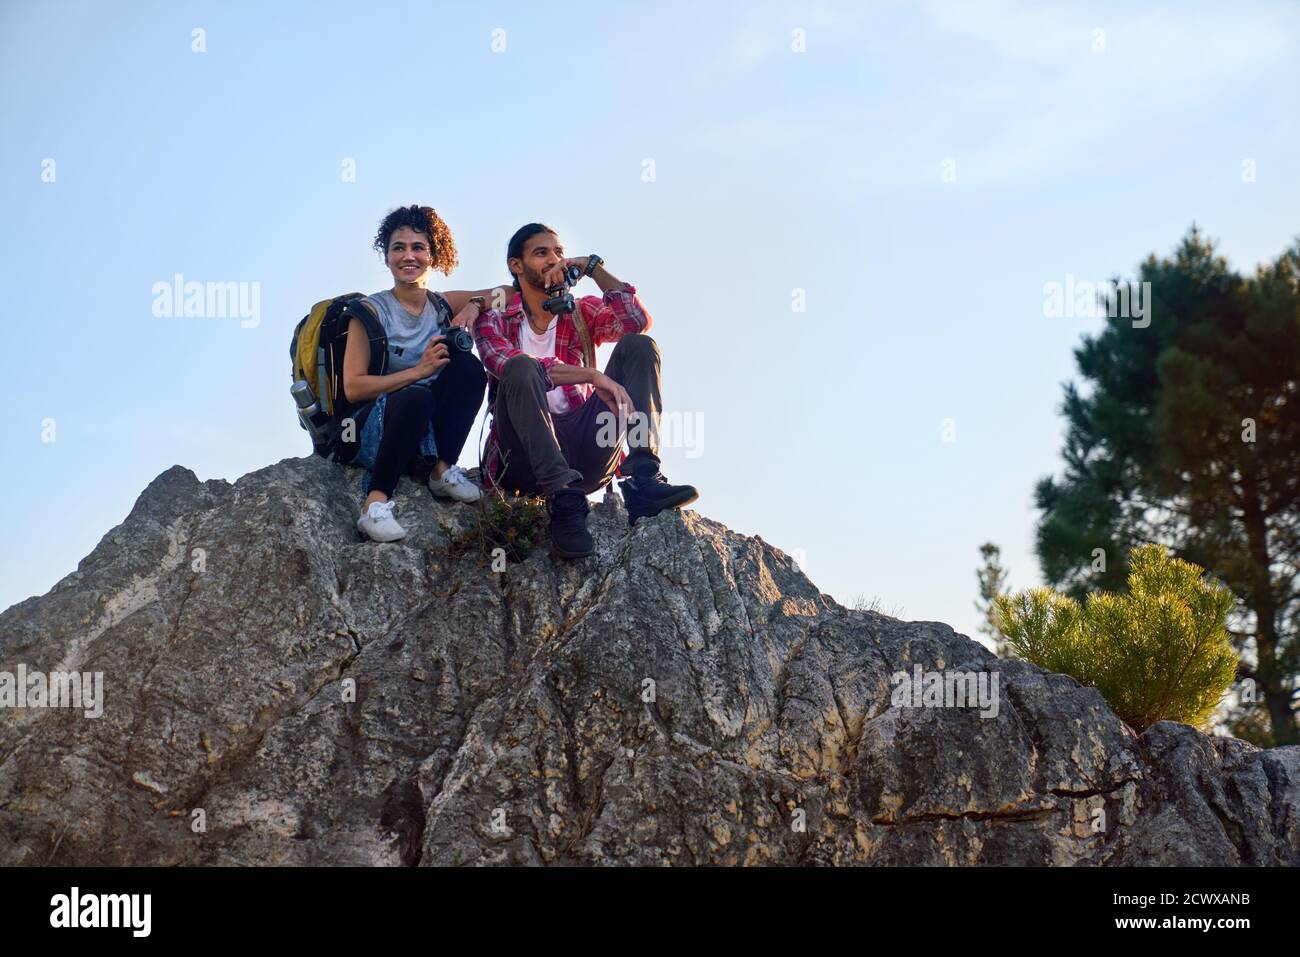 Un jeune couple de randonneurs heureux se détendant sur le rocher Banque D'Images